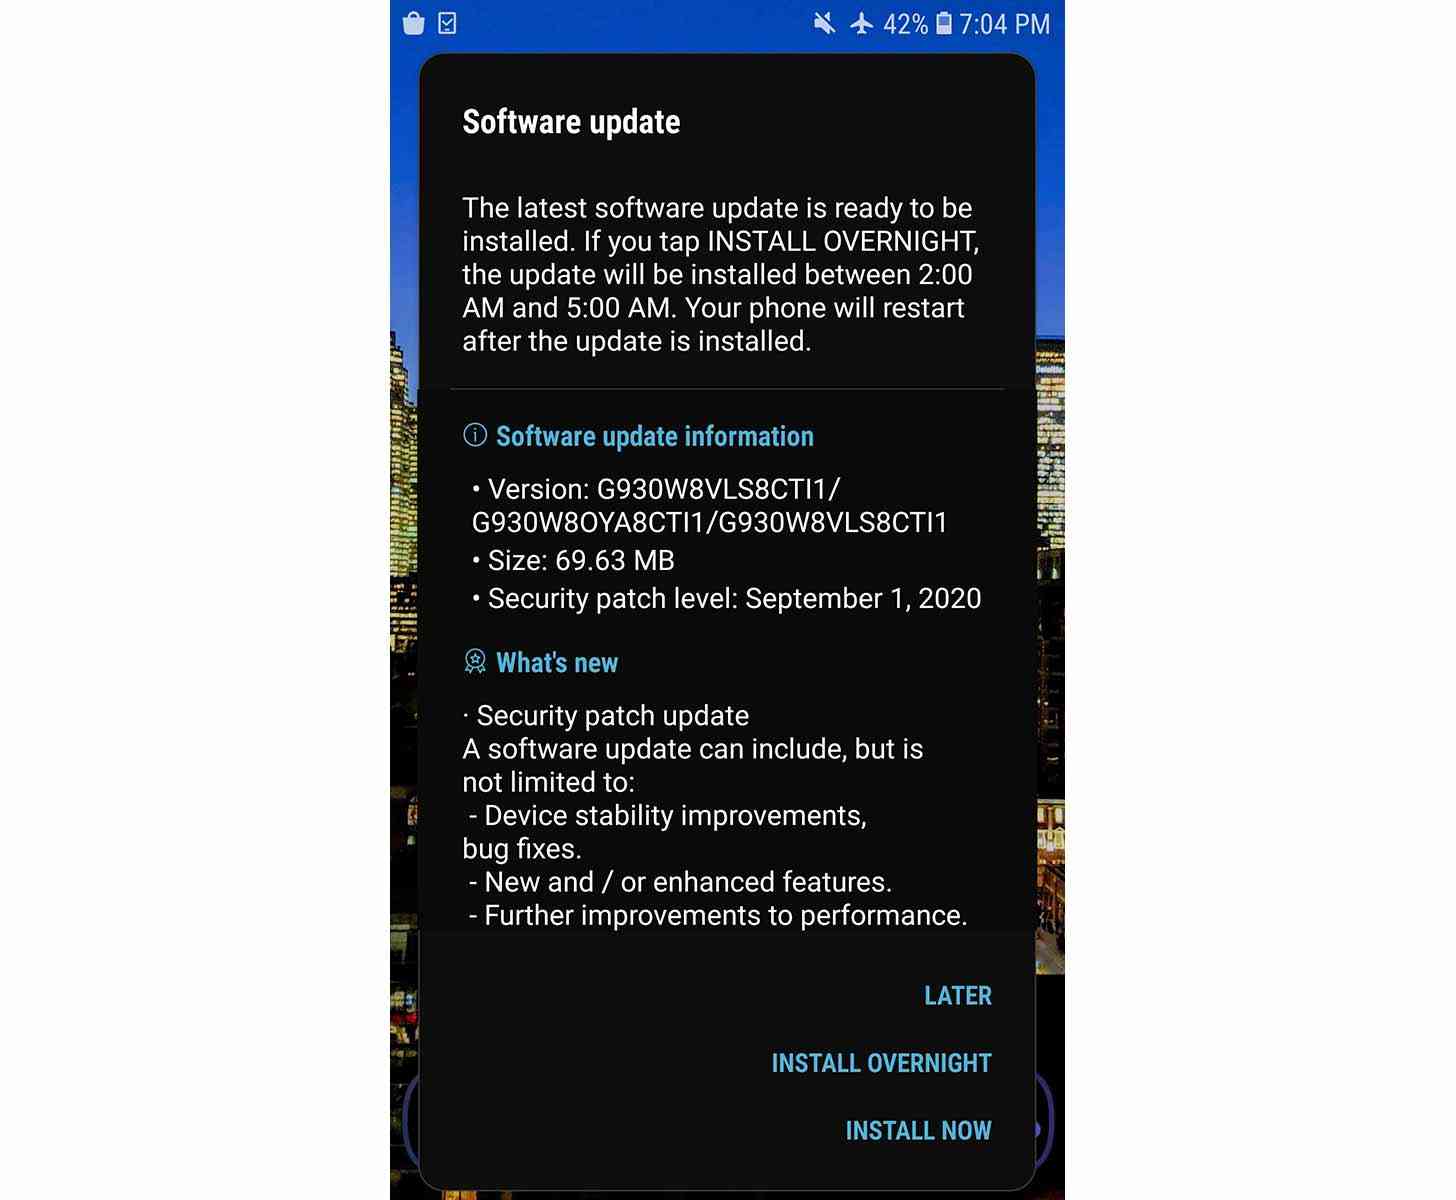 Samsung Galaxy S7 update September 2020